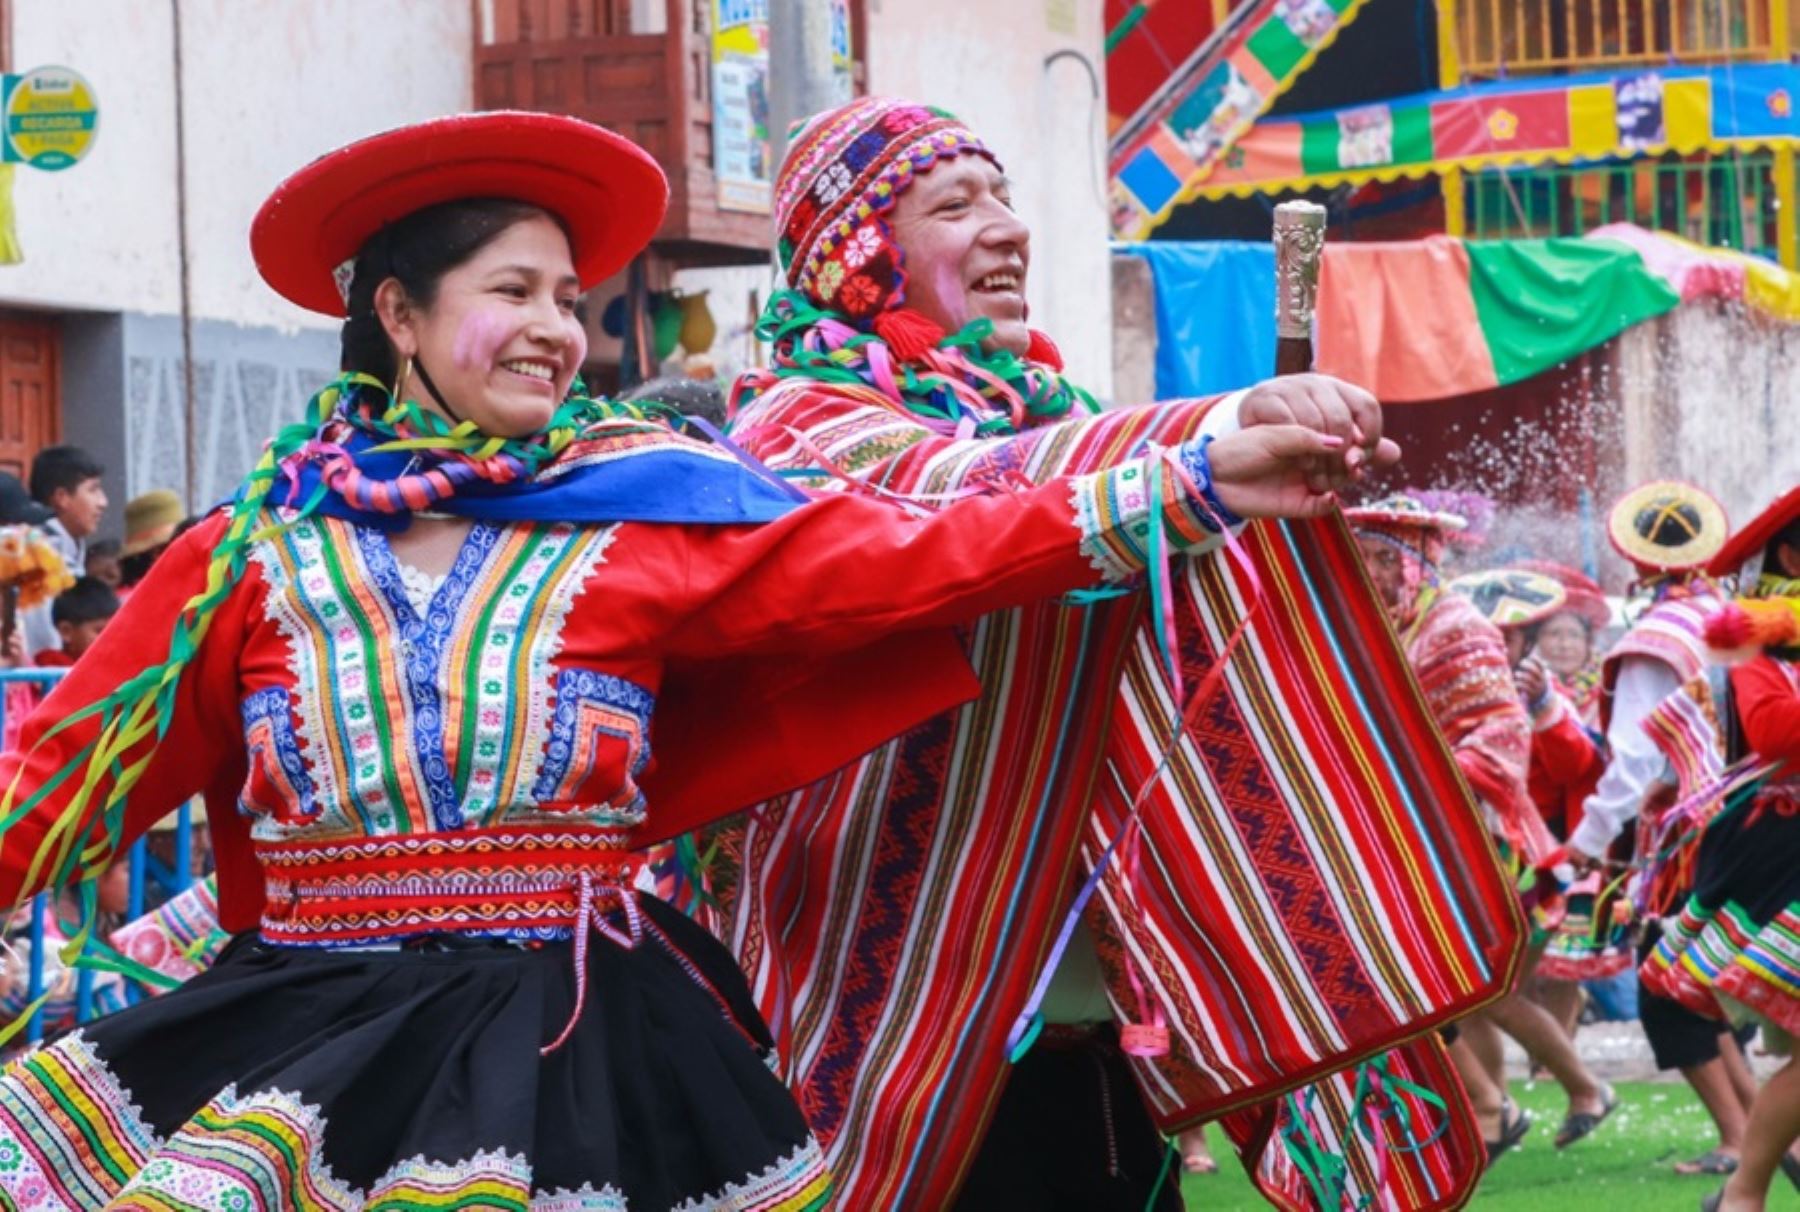 Aunque tiene como expresión similar el júbilo exultante y la unánime participación de la comunidad local e incluso de visitantes nacionales y extranjeros, el Carnaval cusqueño se distingue de las otras festividades carnavalescas que acontecen en diversas regiones del Perú por su originalidad marcada por tradiciones, costumbres, danzas y música genuinas que identifican a los descendientes de los incas.